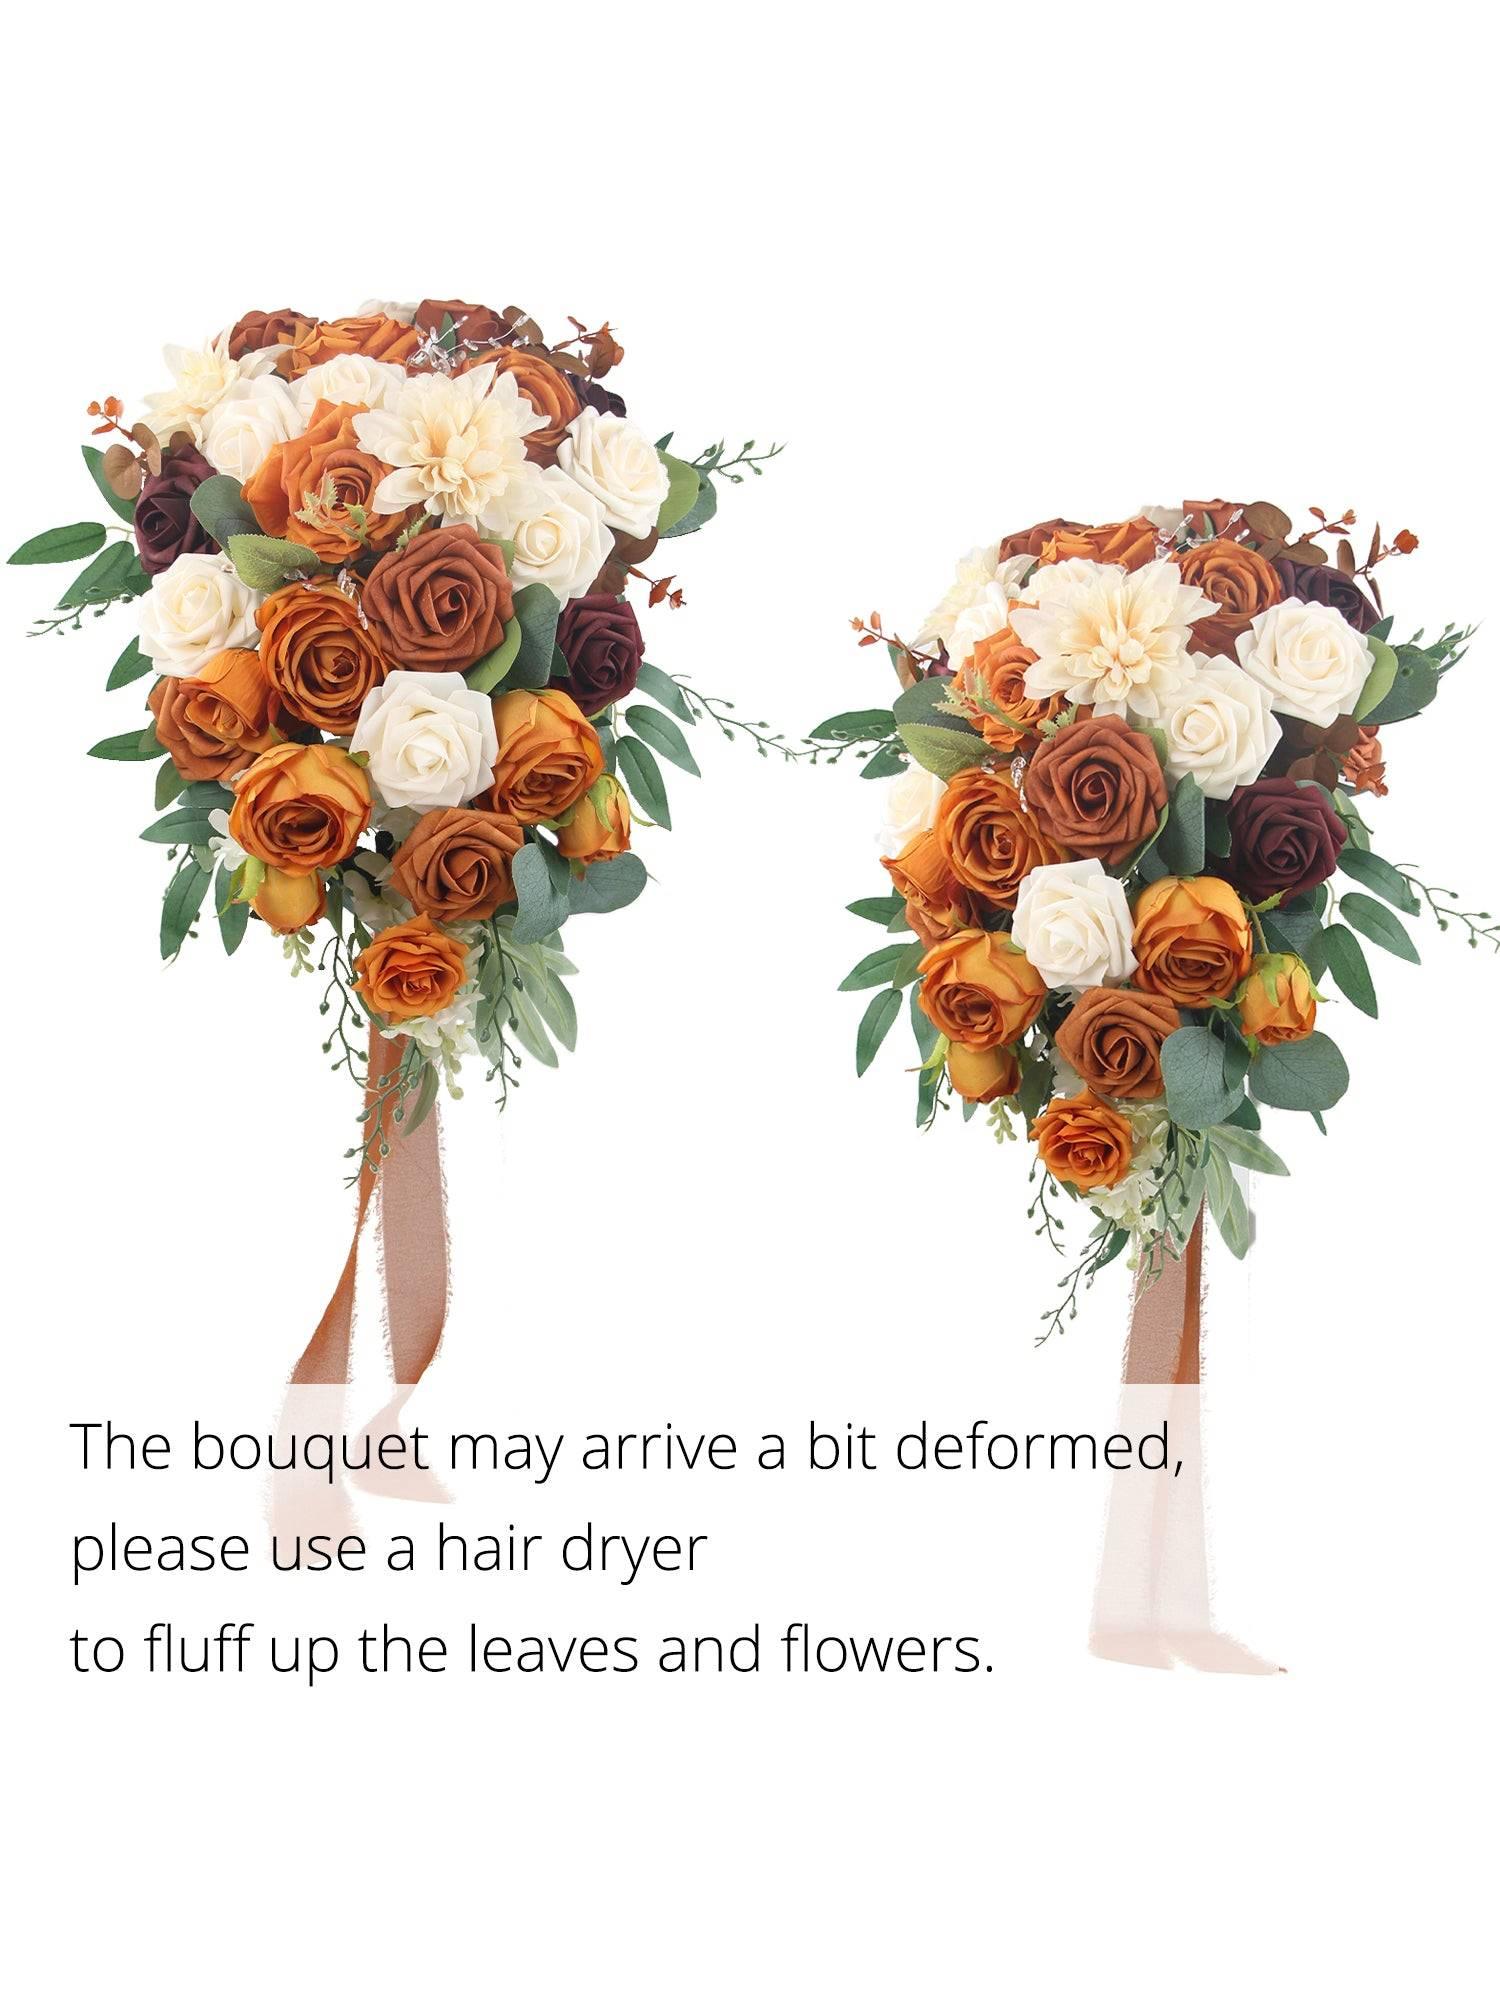 Cascading Wedding Bouquet – Succulent Artworks